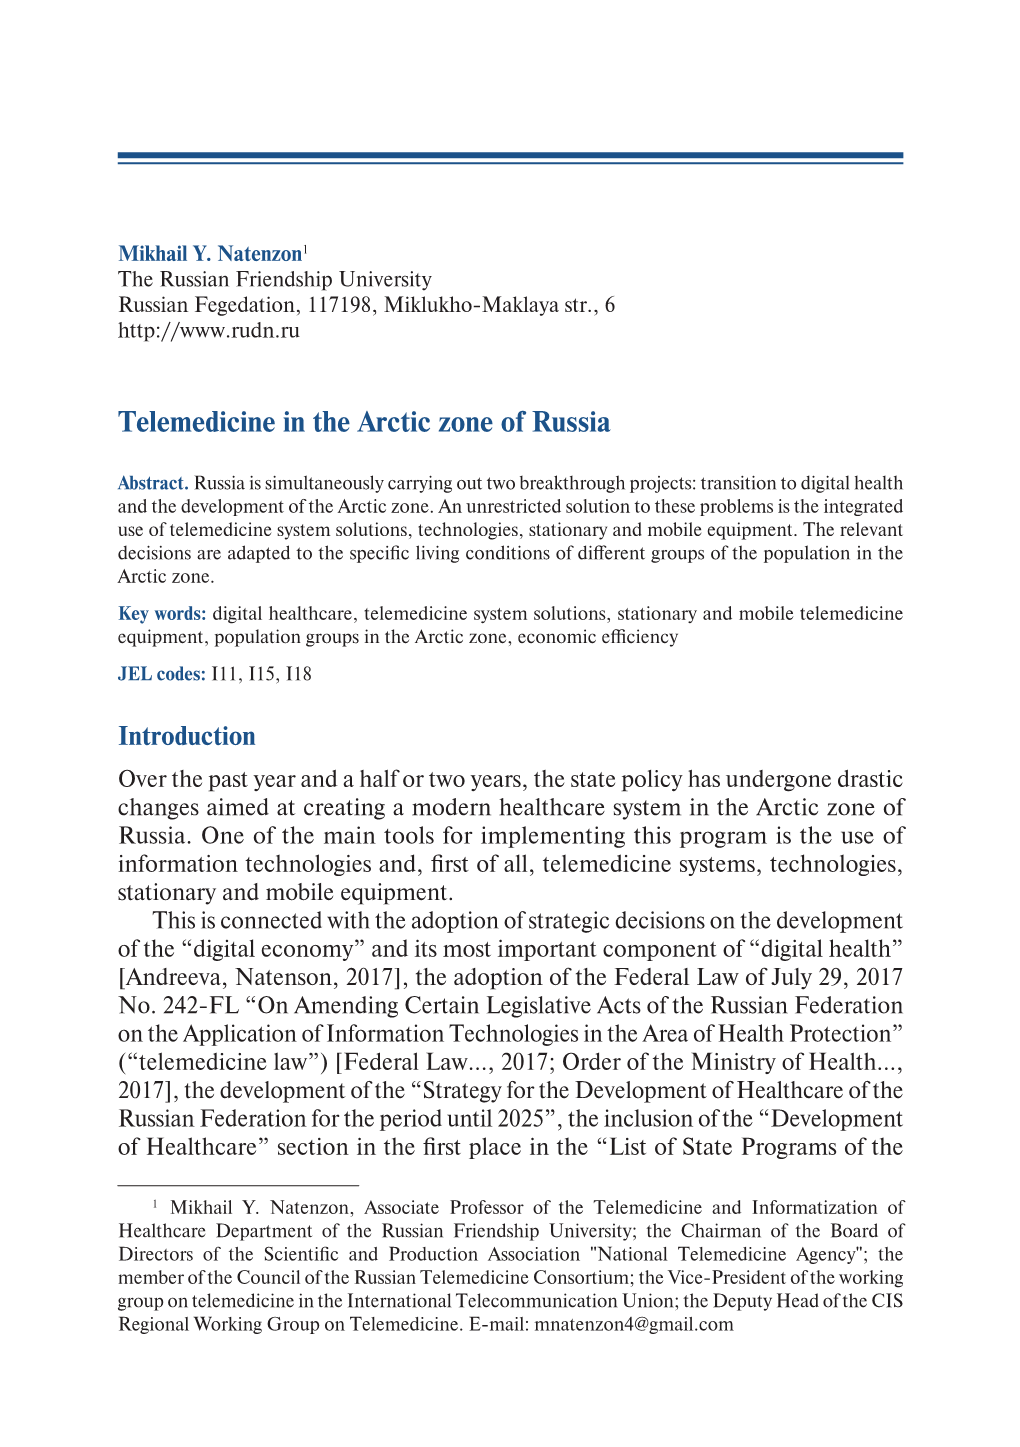 Telemedicine in the Arctic Zone of Russia